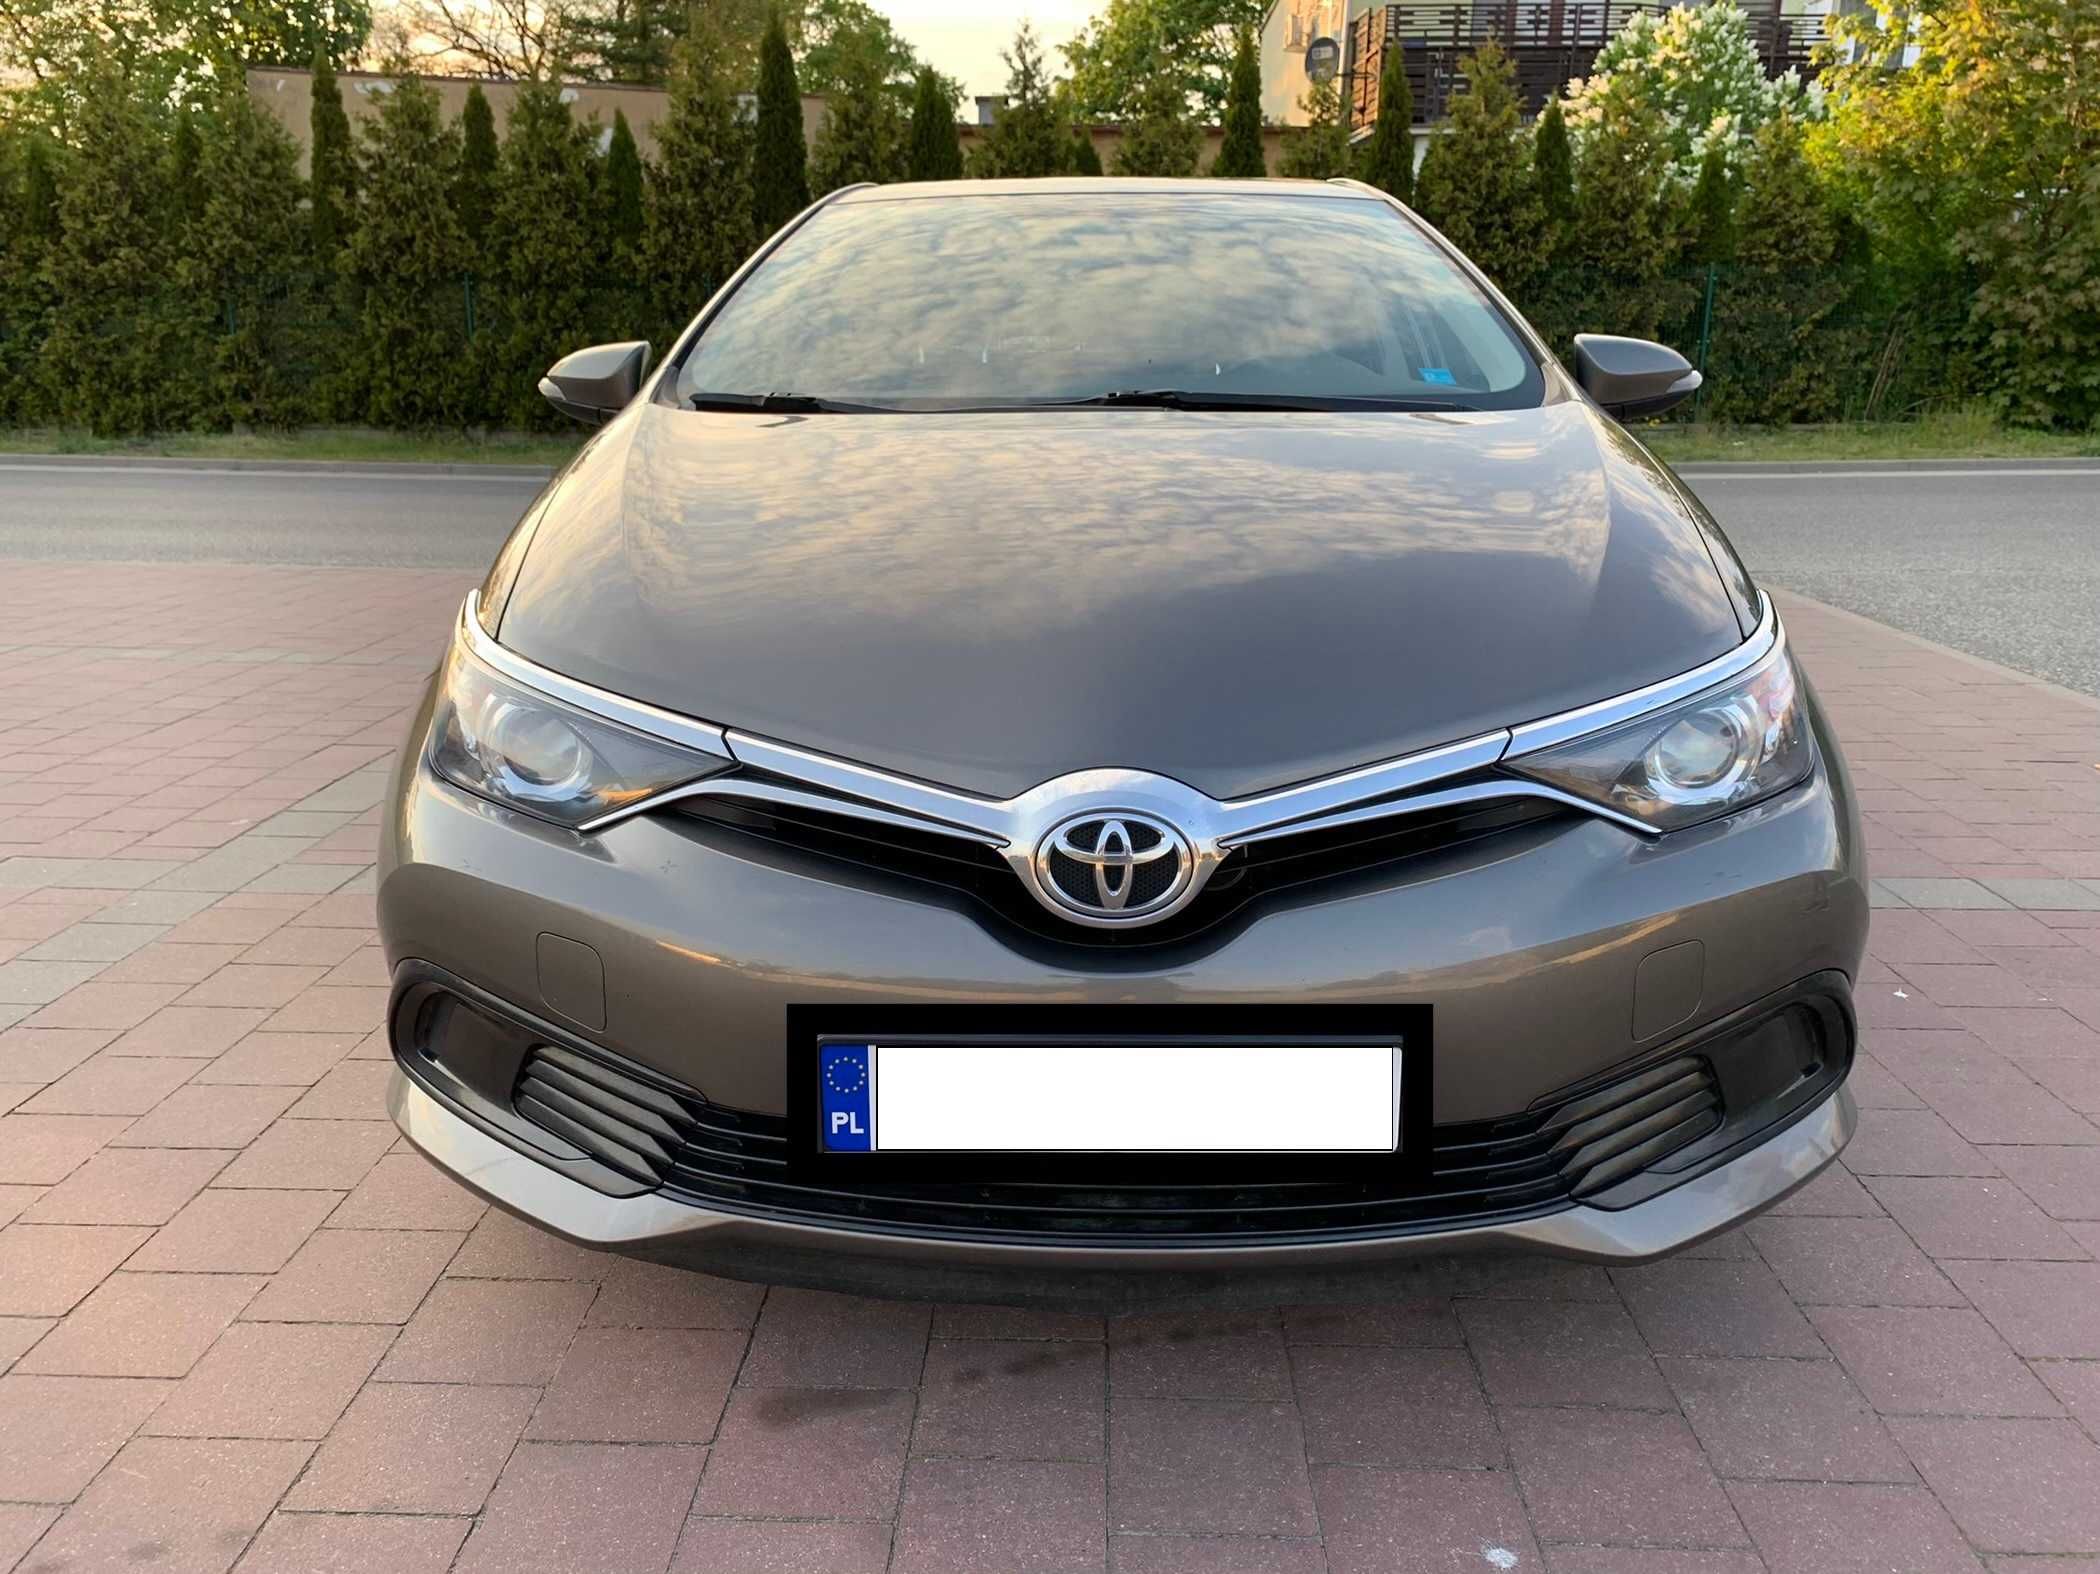 Toyota Auris, 1.6 benzyna, 2018, salon Polska (REZERWACJA)